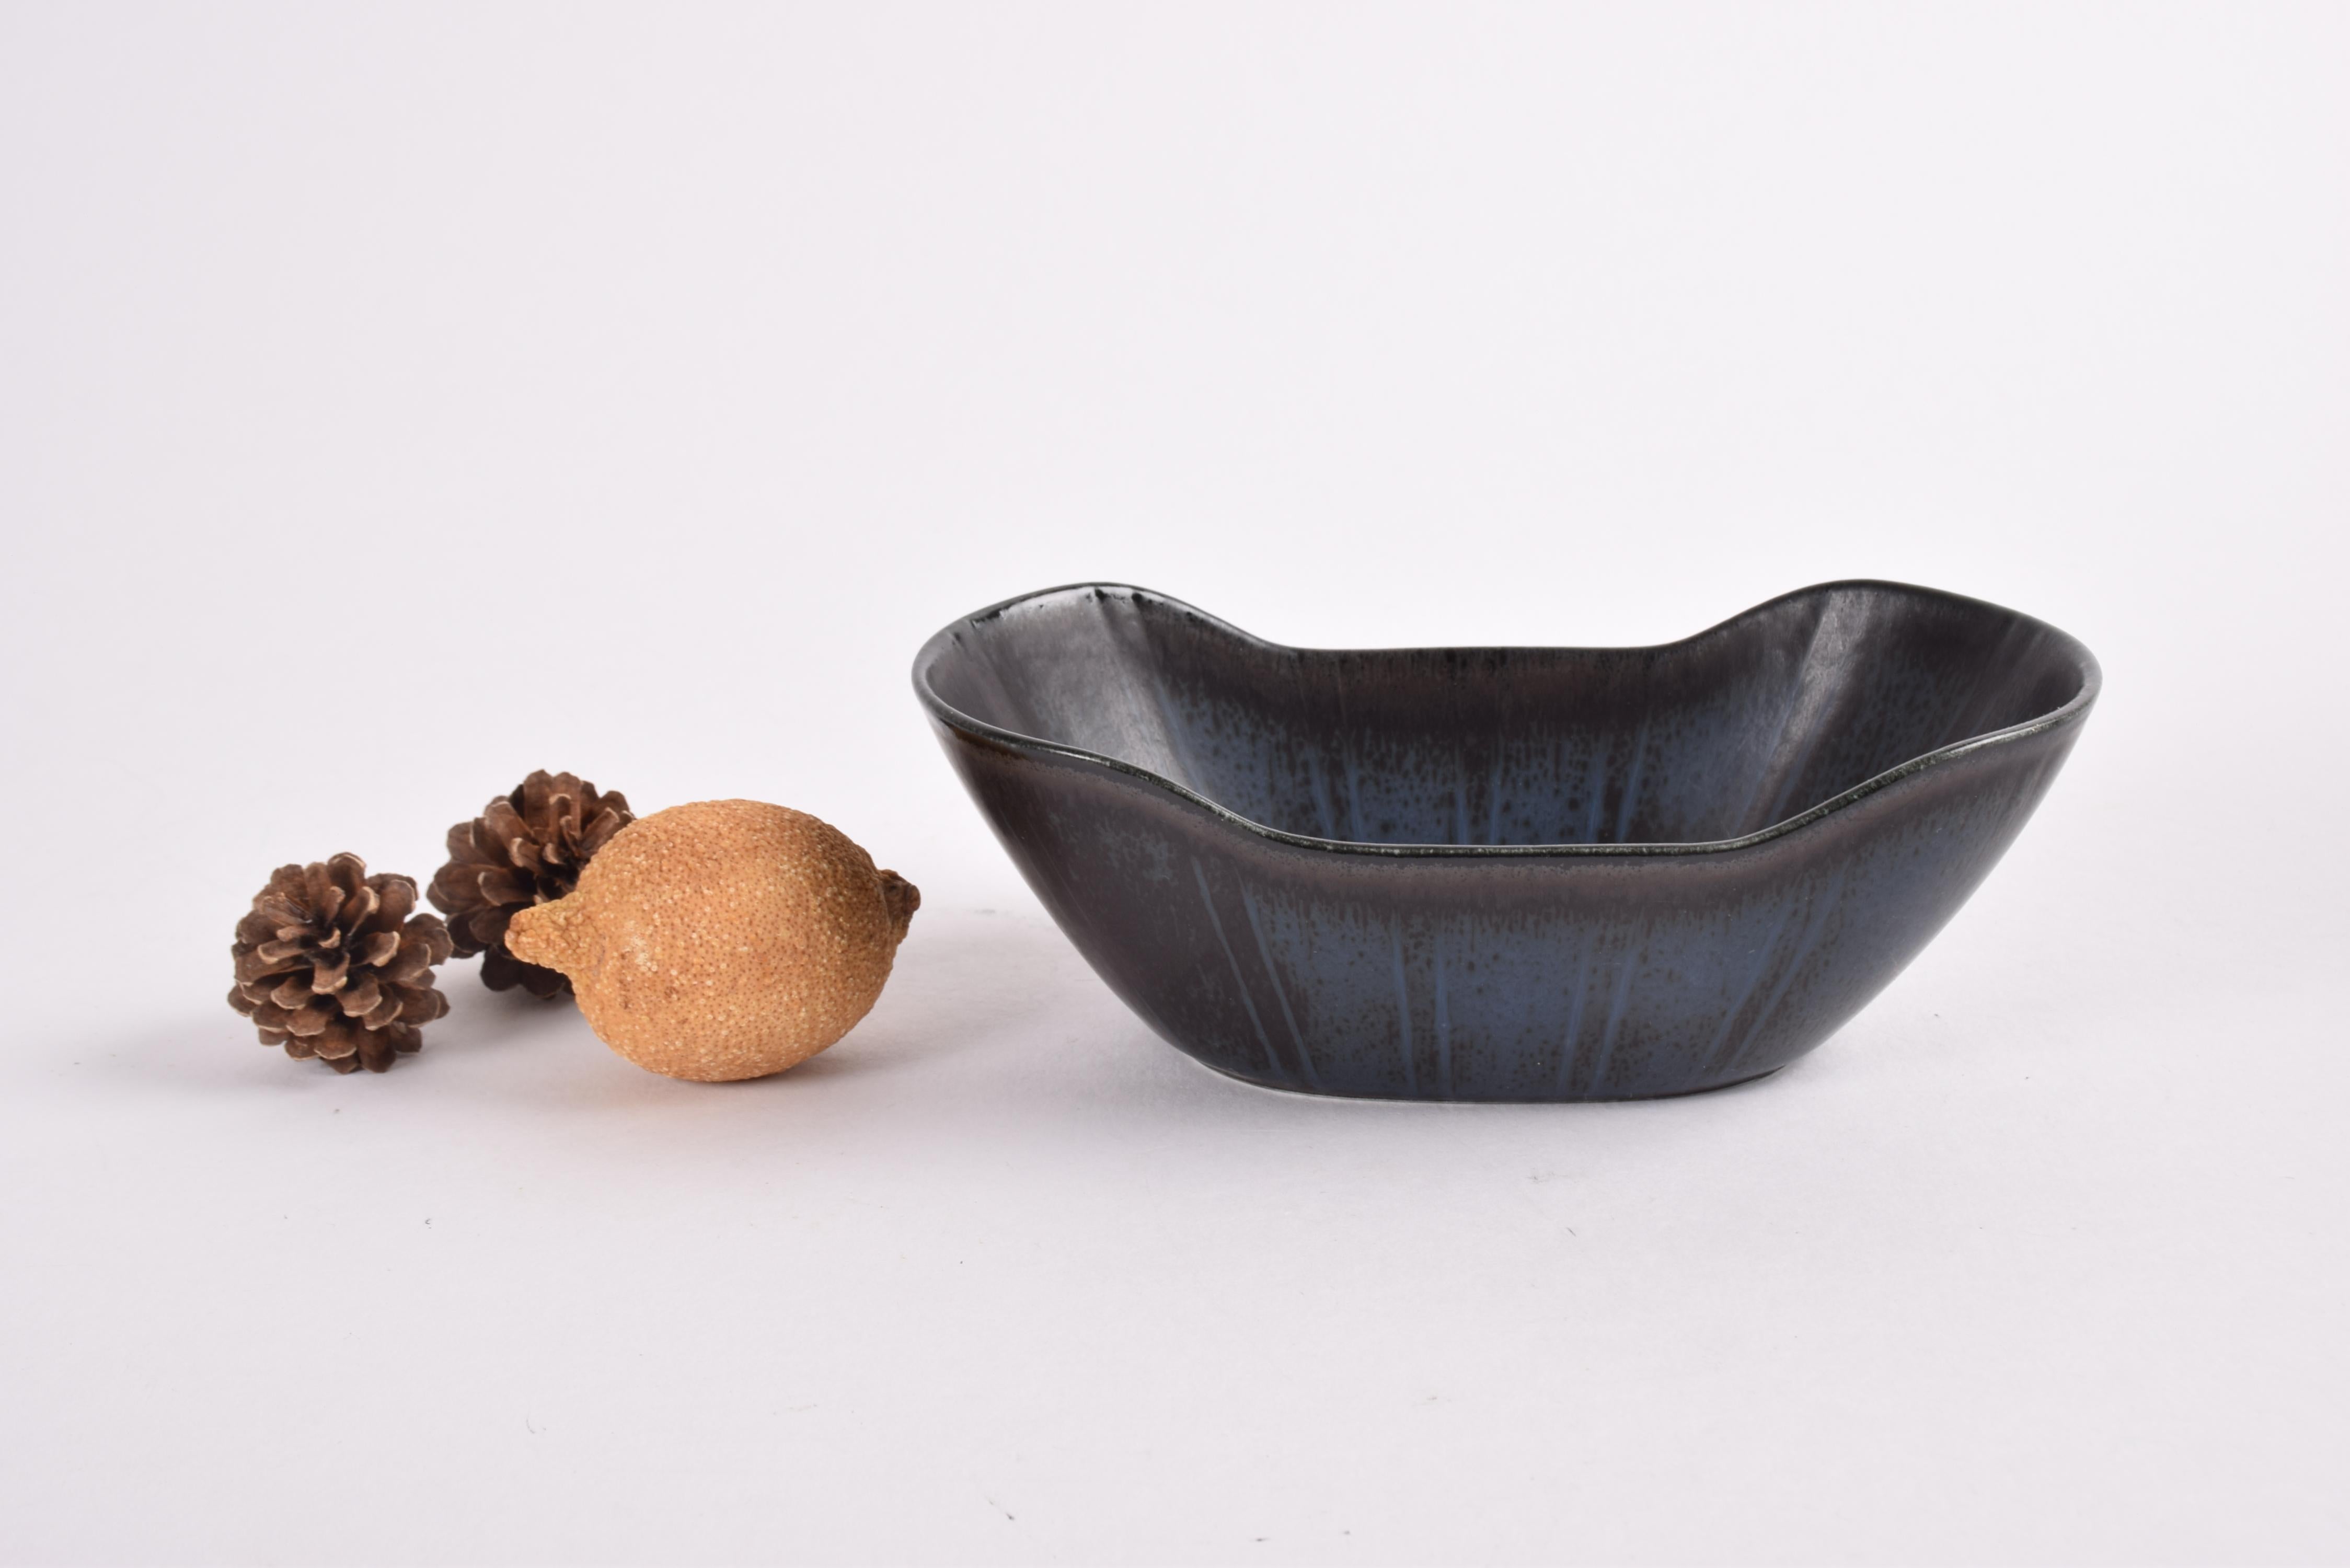 Petit bol oblong en céramique de Gunnar Nylund pour Rörstrand Suède.
Fabriqué vers les années 1950-1960.

Le bol présente une glaçure avec un mélange de couleurs sombres : noir, brun et gris bleu. Il est décoré d'un décor de rayures sur les parois